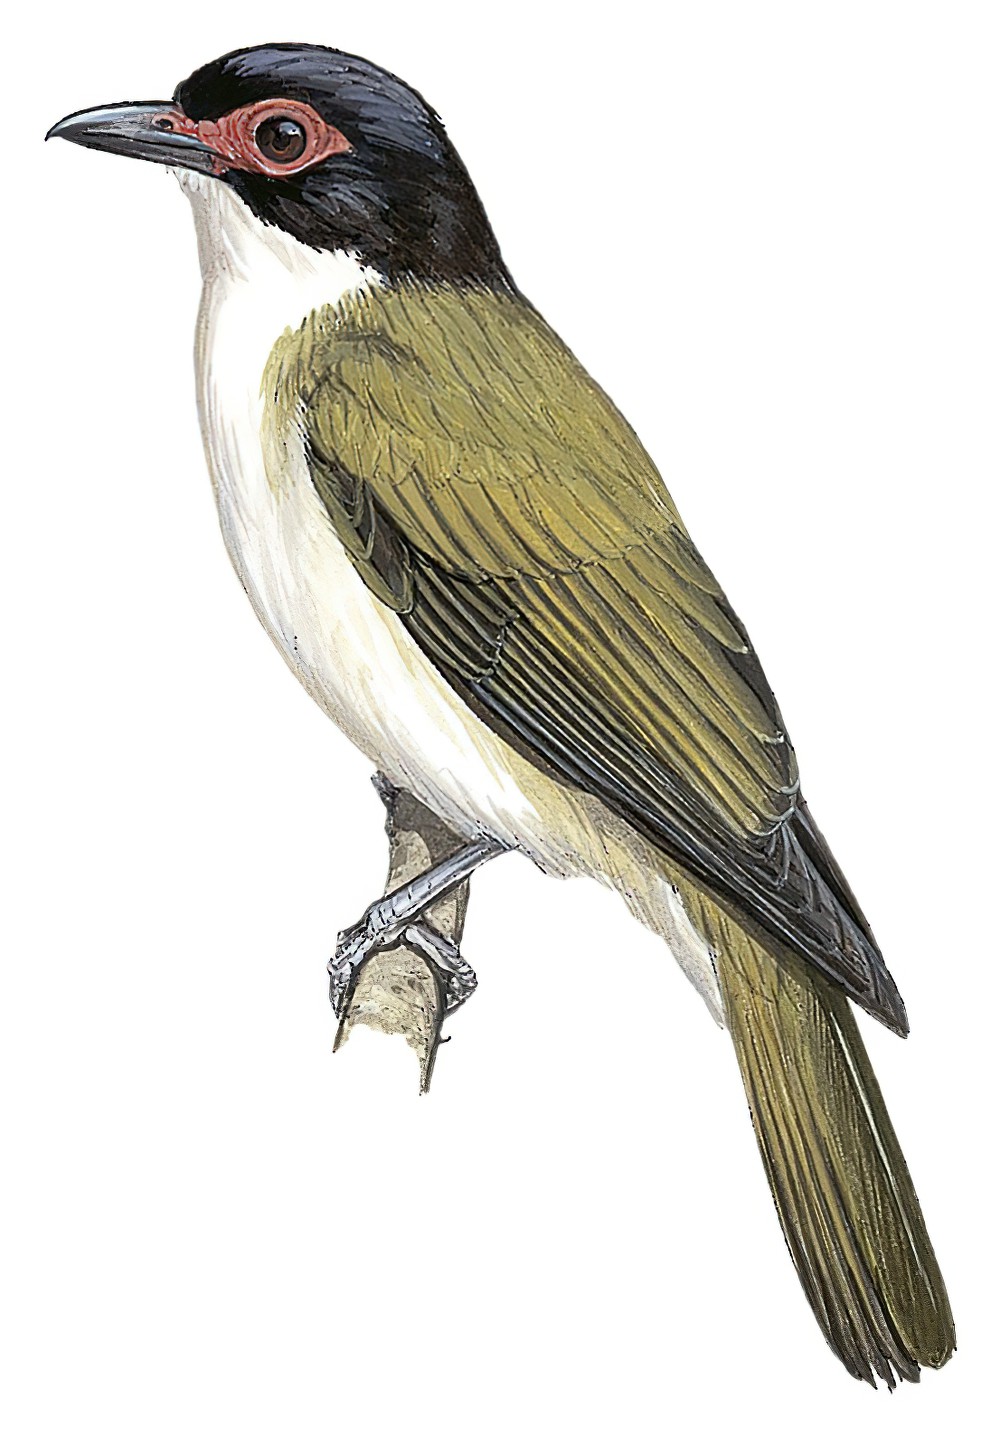 Wetar Figbird / Sphecotheres hypoleucus